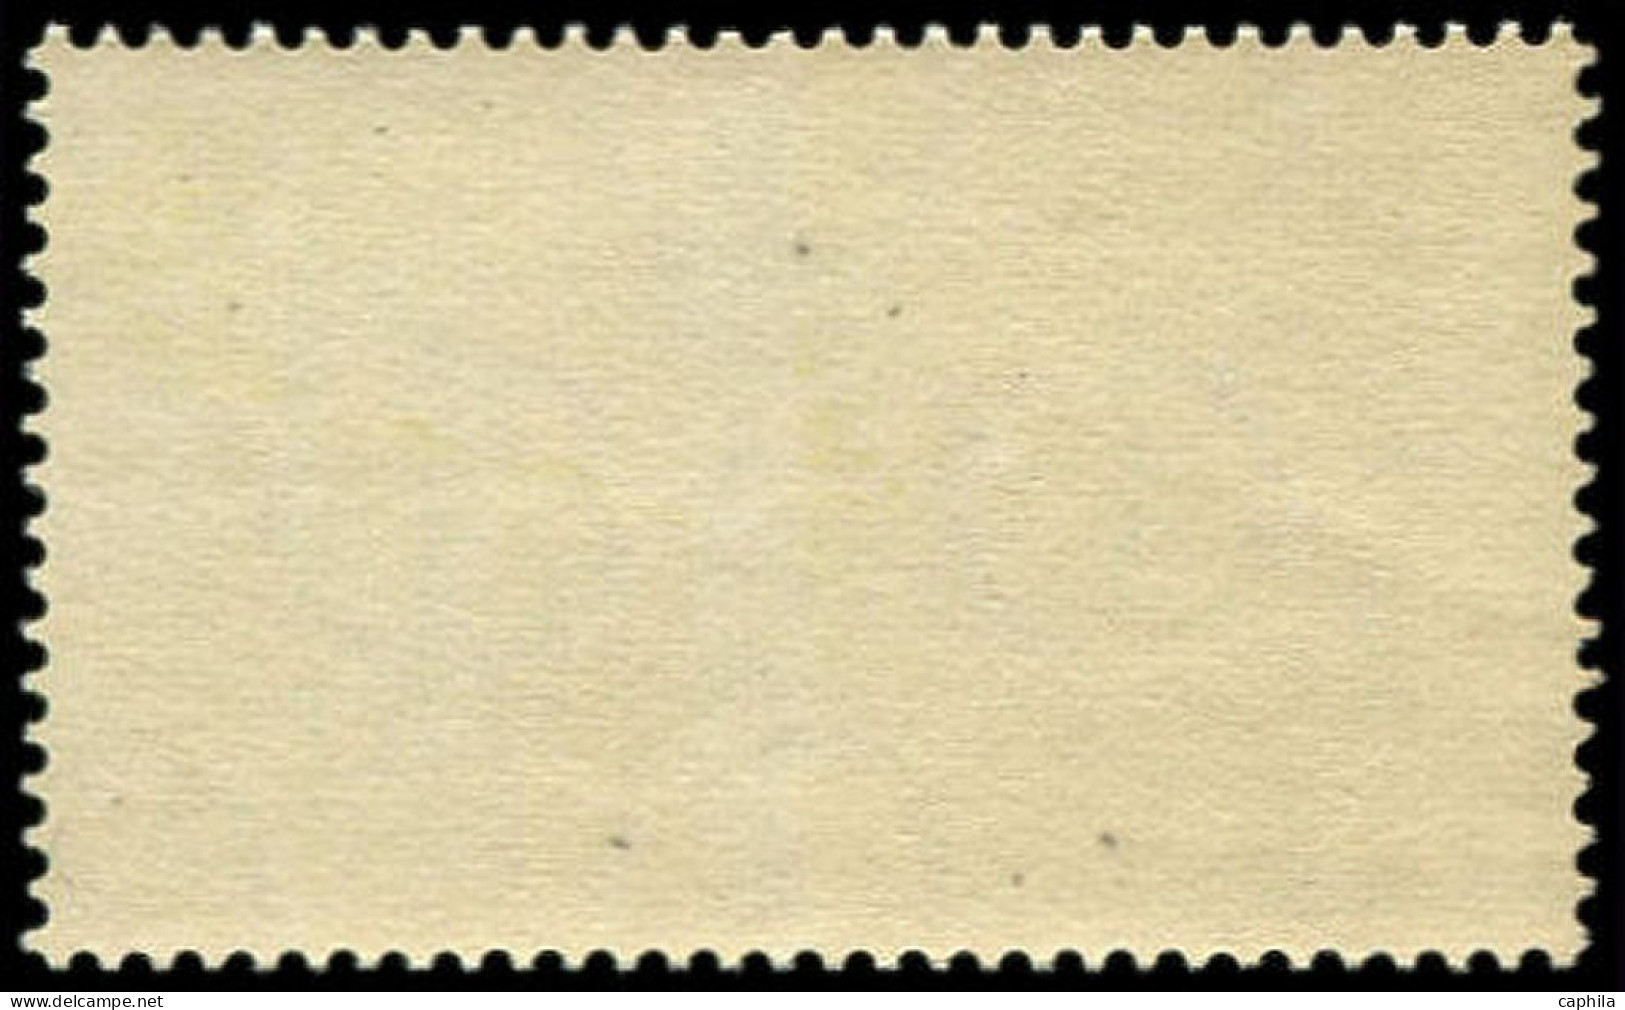 ** IRLANDE - Poste - 267, Piquage à Cheval: 4p. Europa 1971 - Unused Stamps